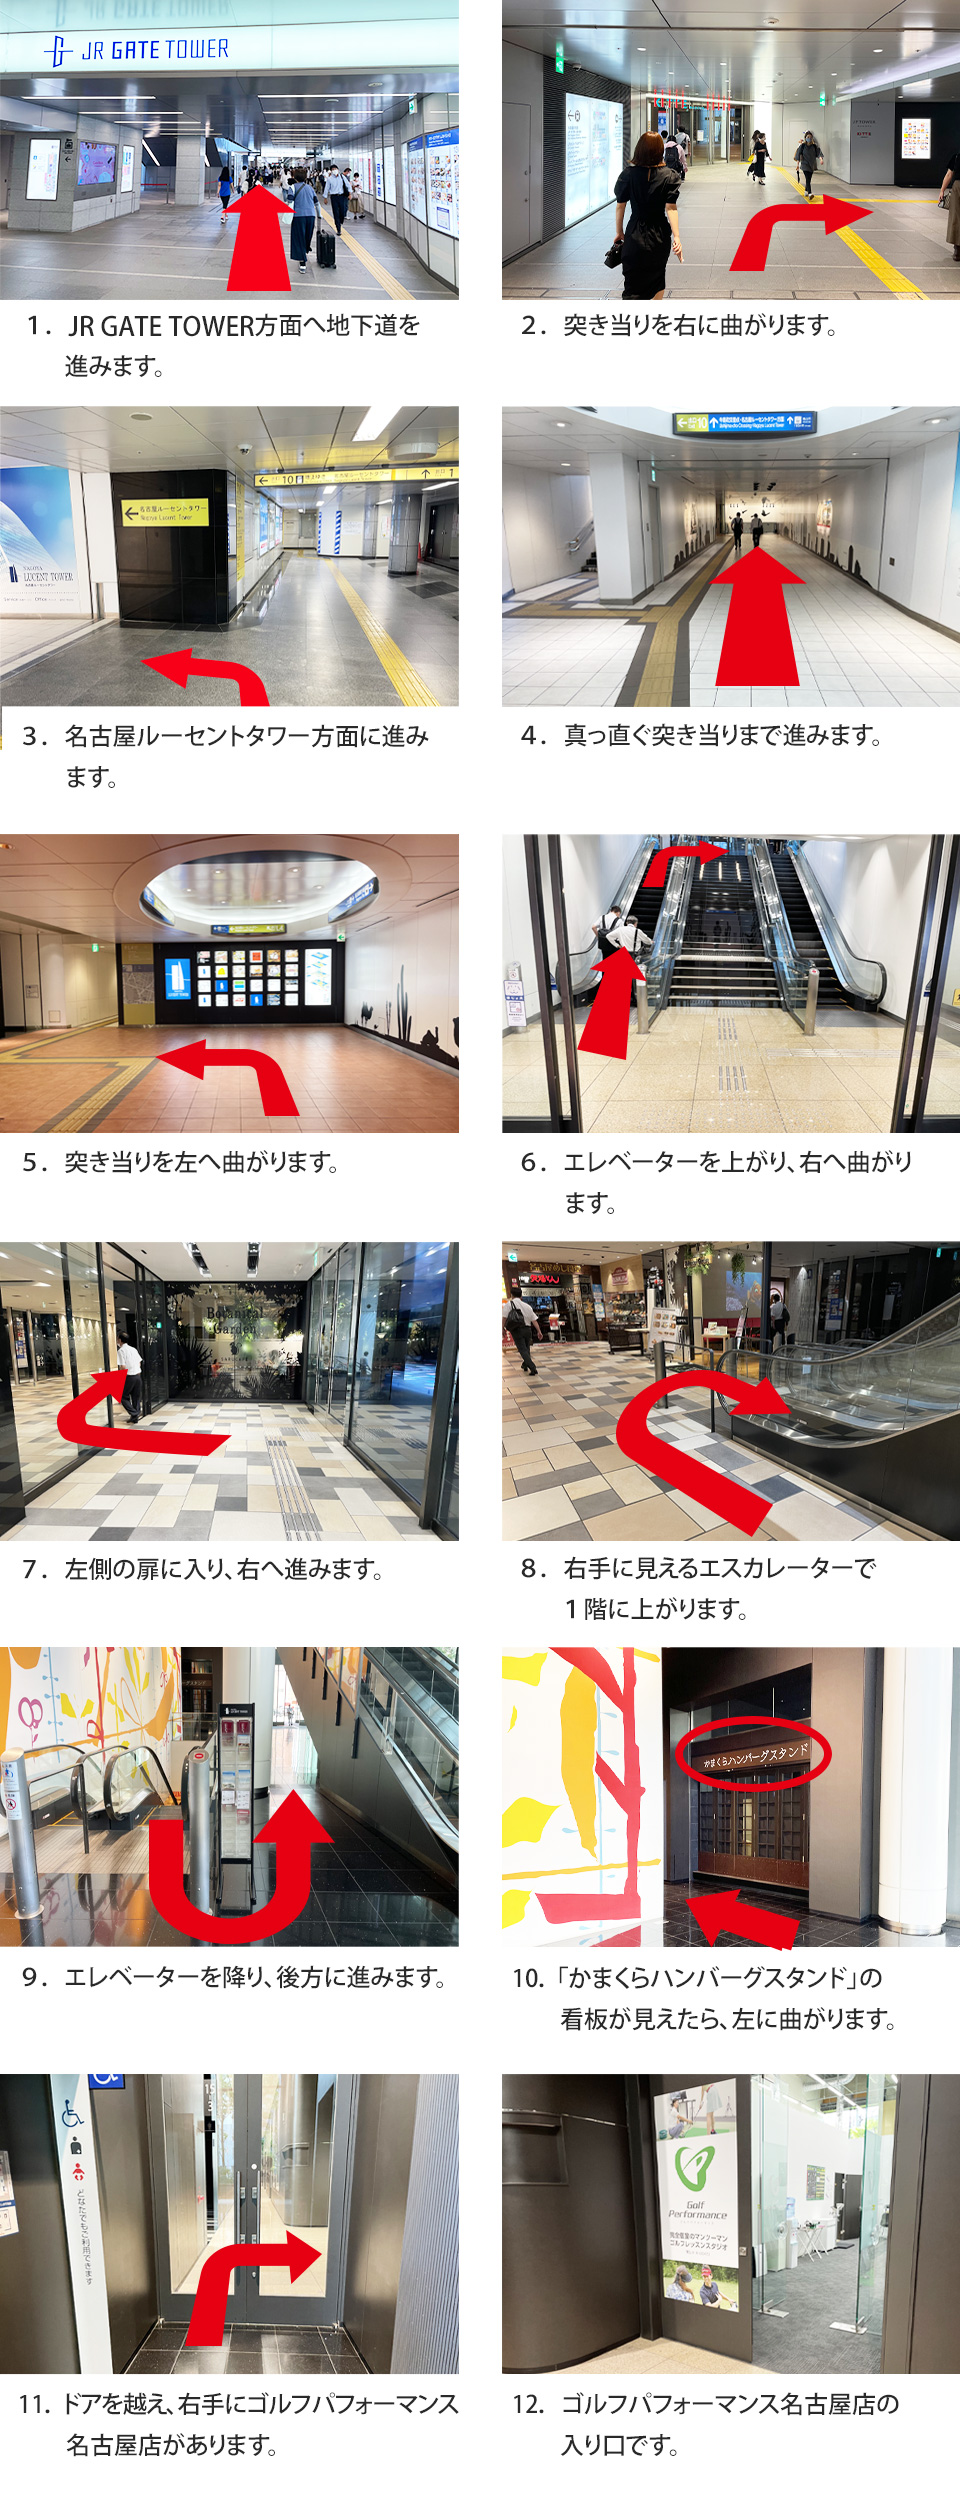 名古屋店ルートマップ　地下ルート